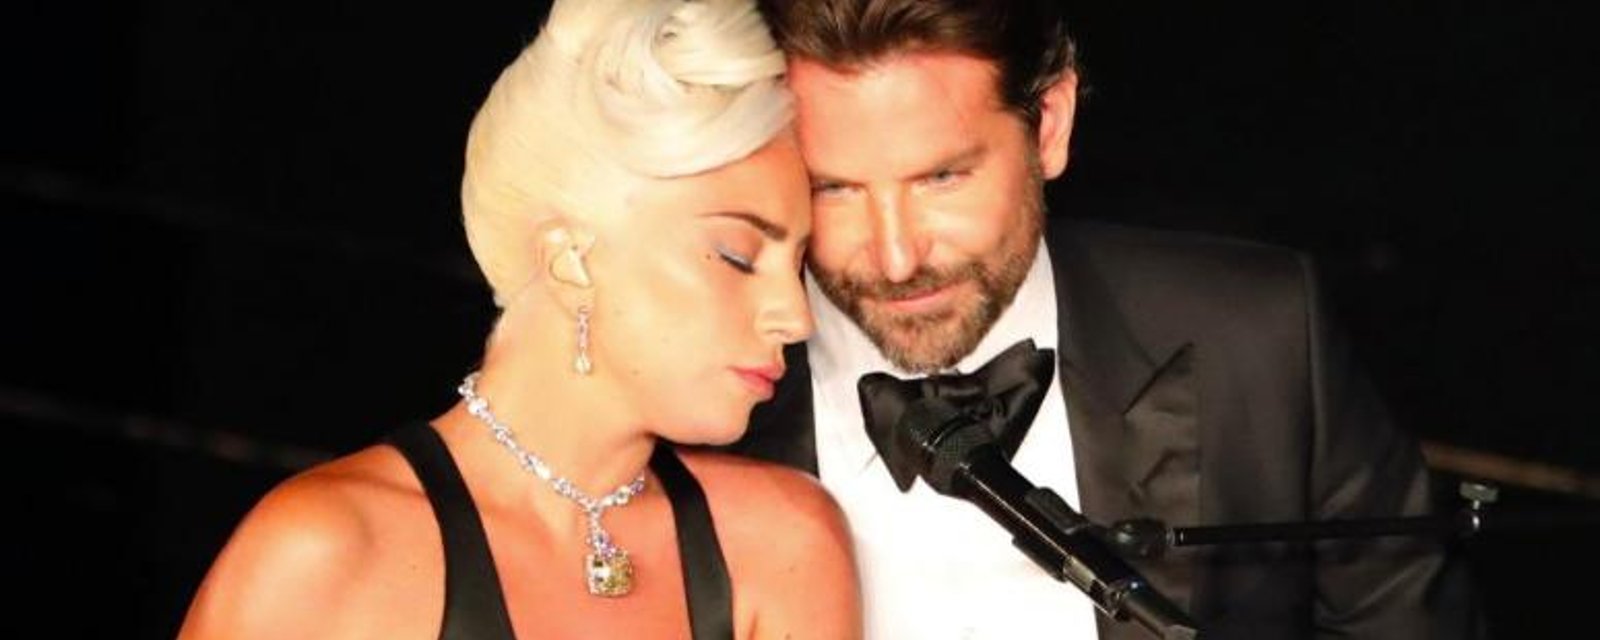 Lady Gaga a offert le plus beau des remerciements à Bradley Cooper, en gagnant un Oscar